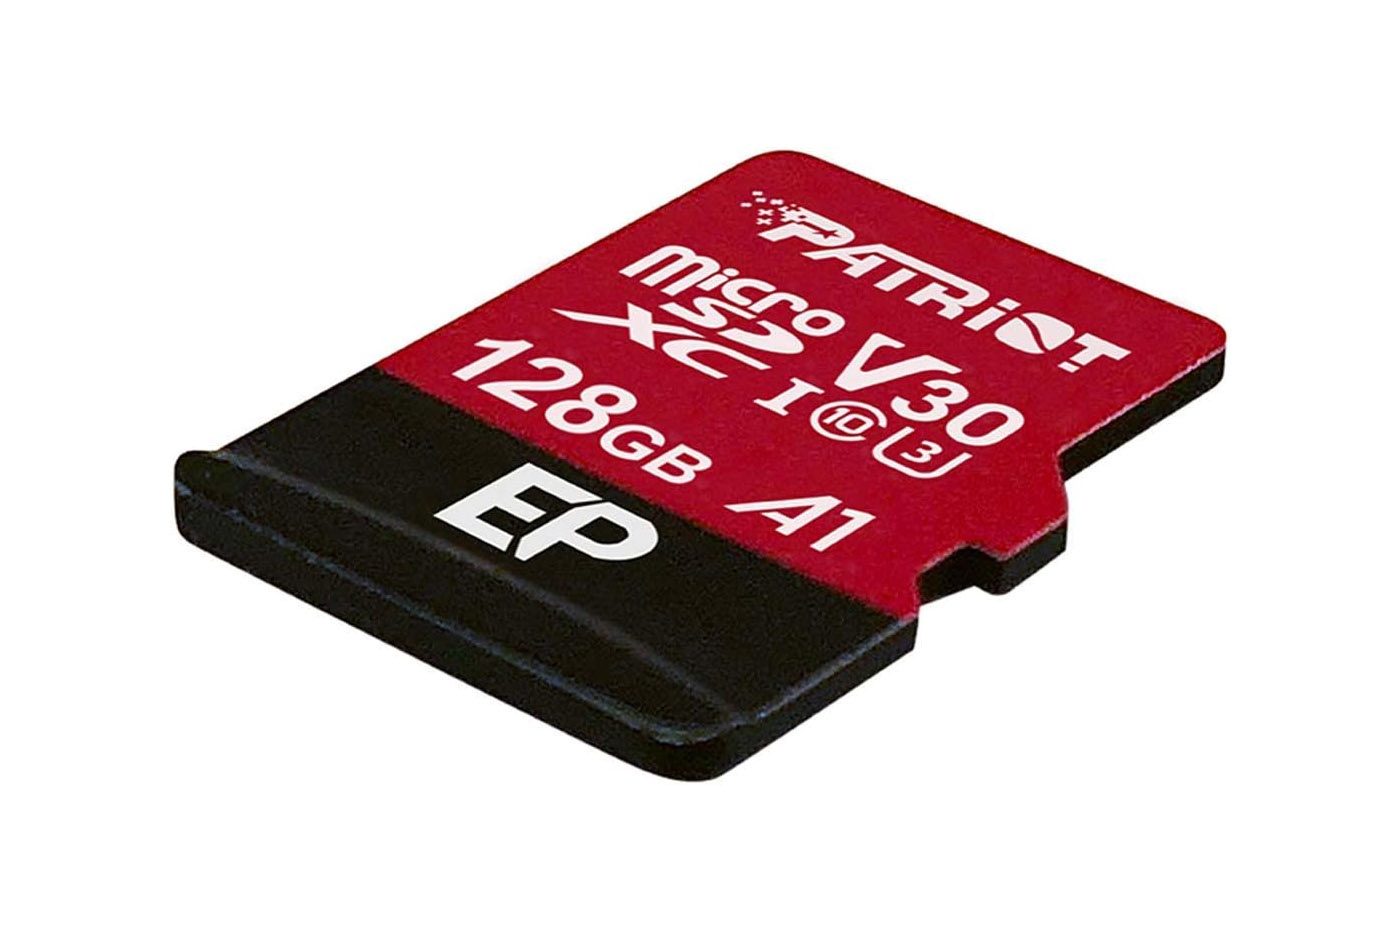 Cette carte MicroSDXC Patriot est quasiment offerte avec cette offre